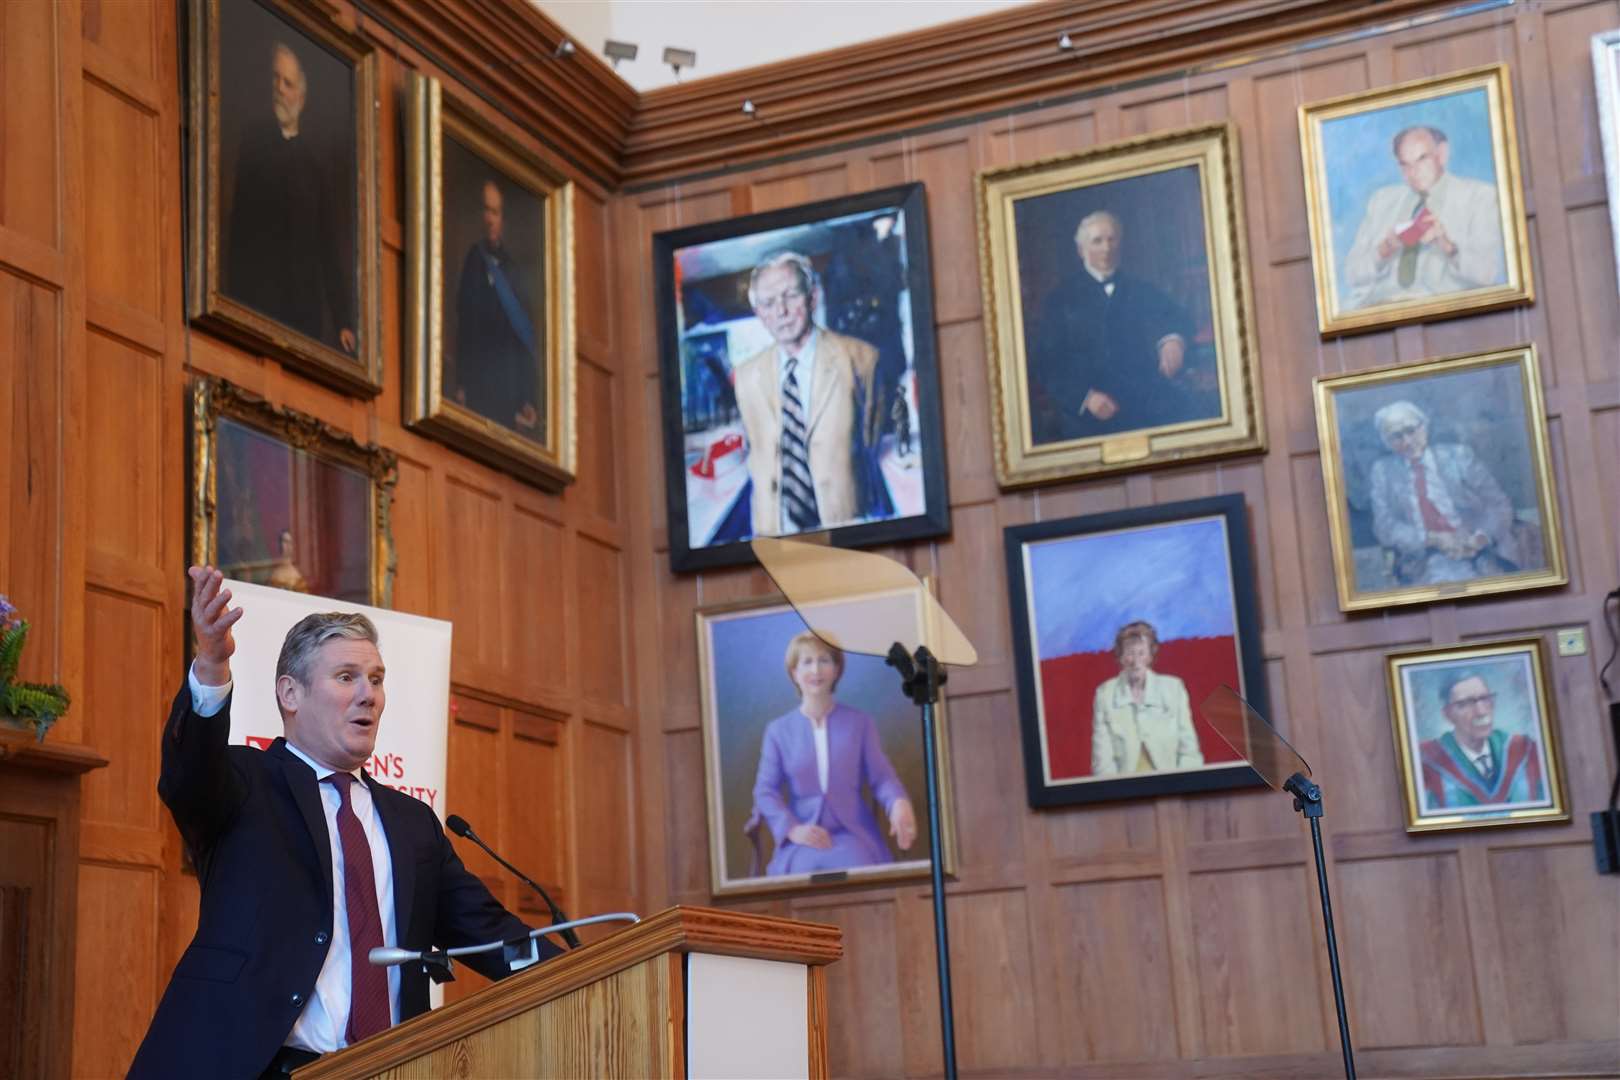 Sir Keir Starmer speaking at Queen’s University in Belfast (Brian Lawless/PA)